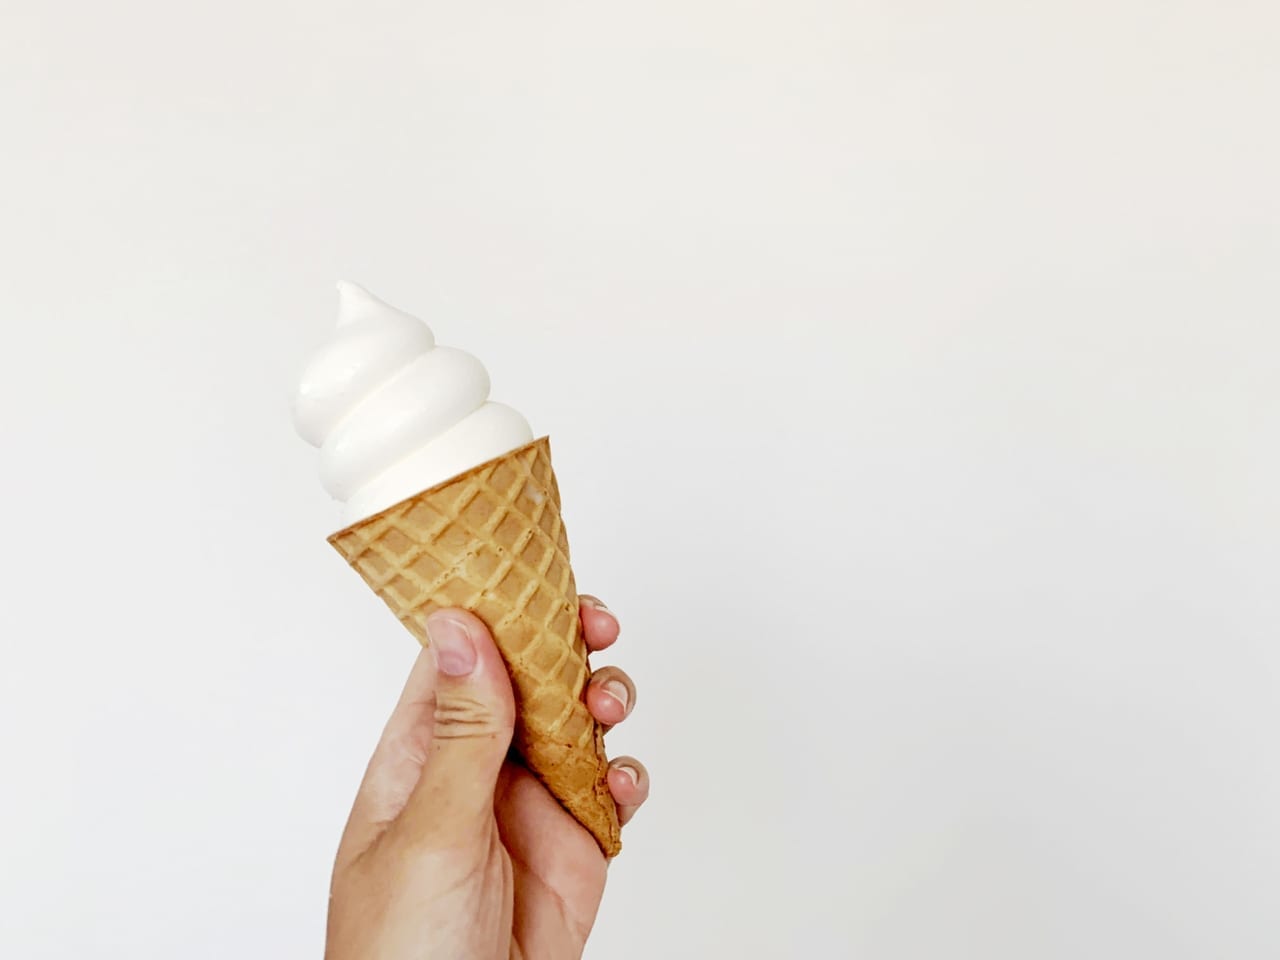 ソフトクリームのイメージ写真